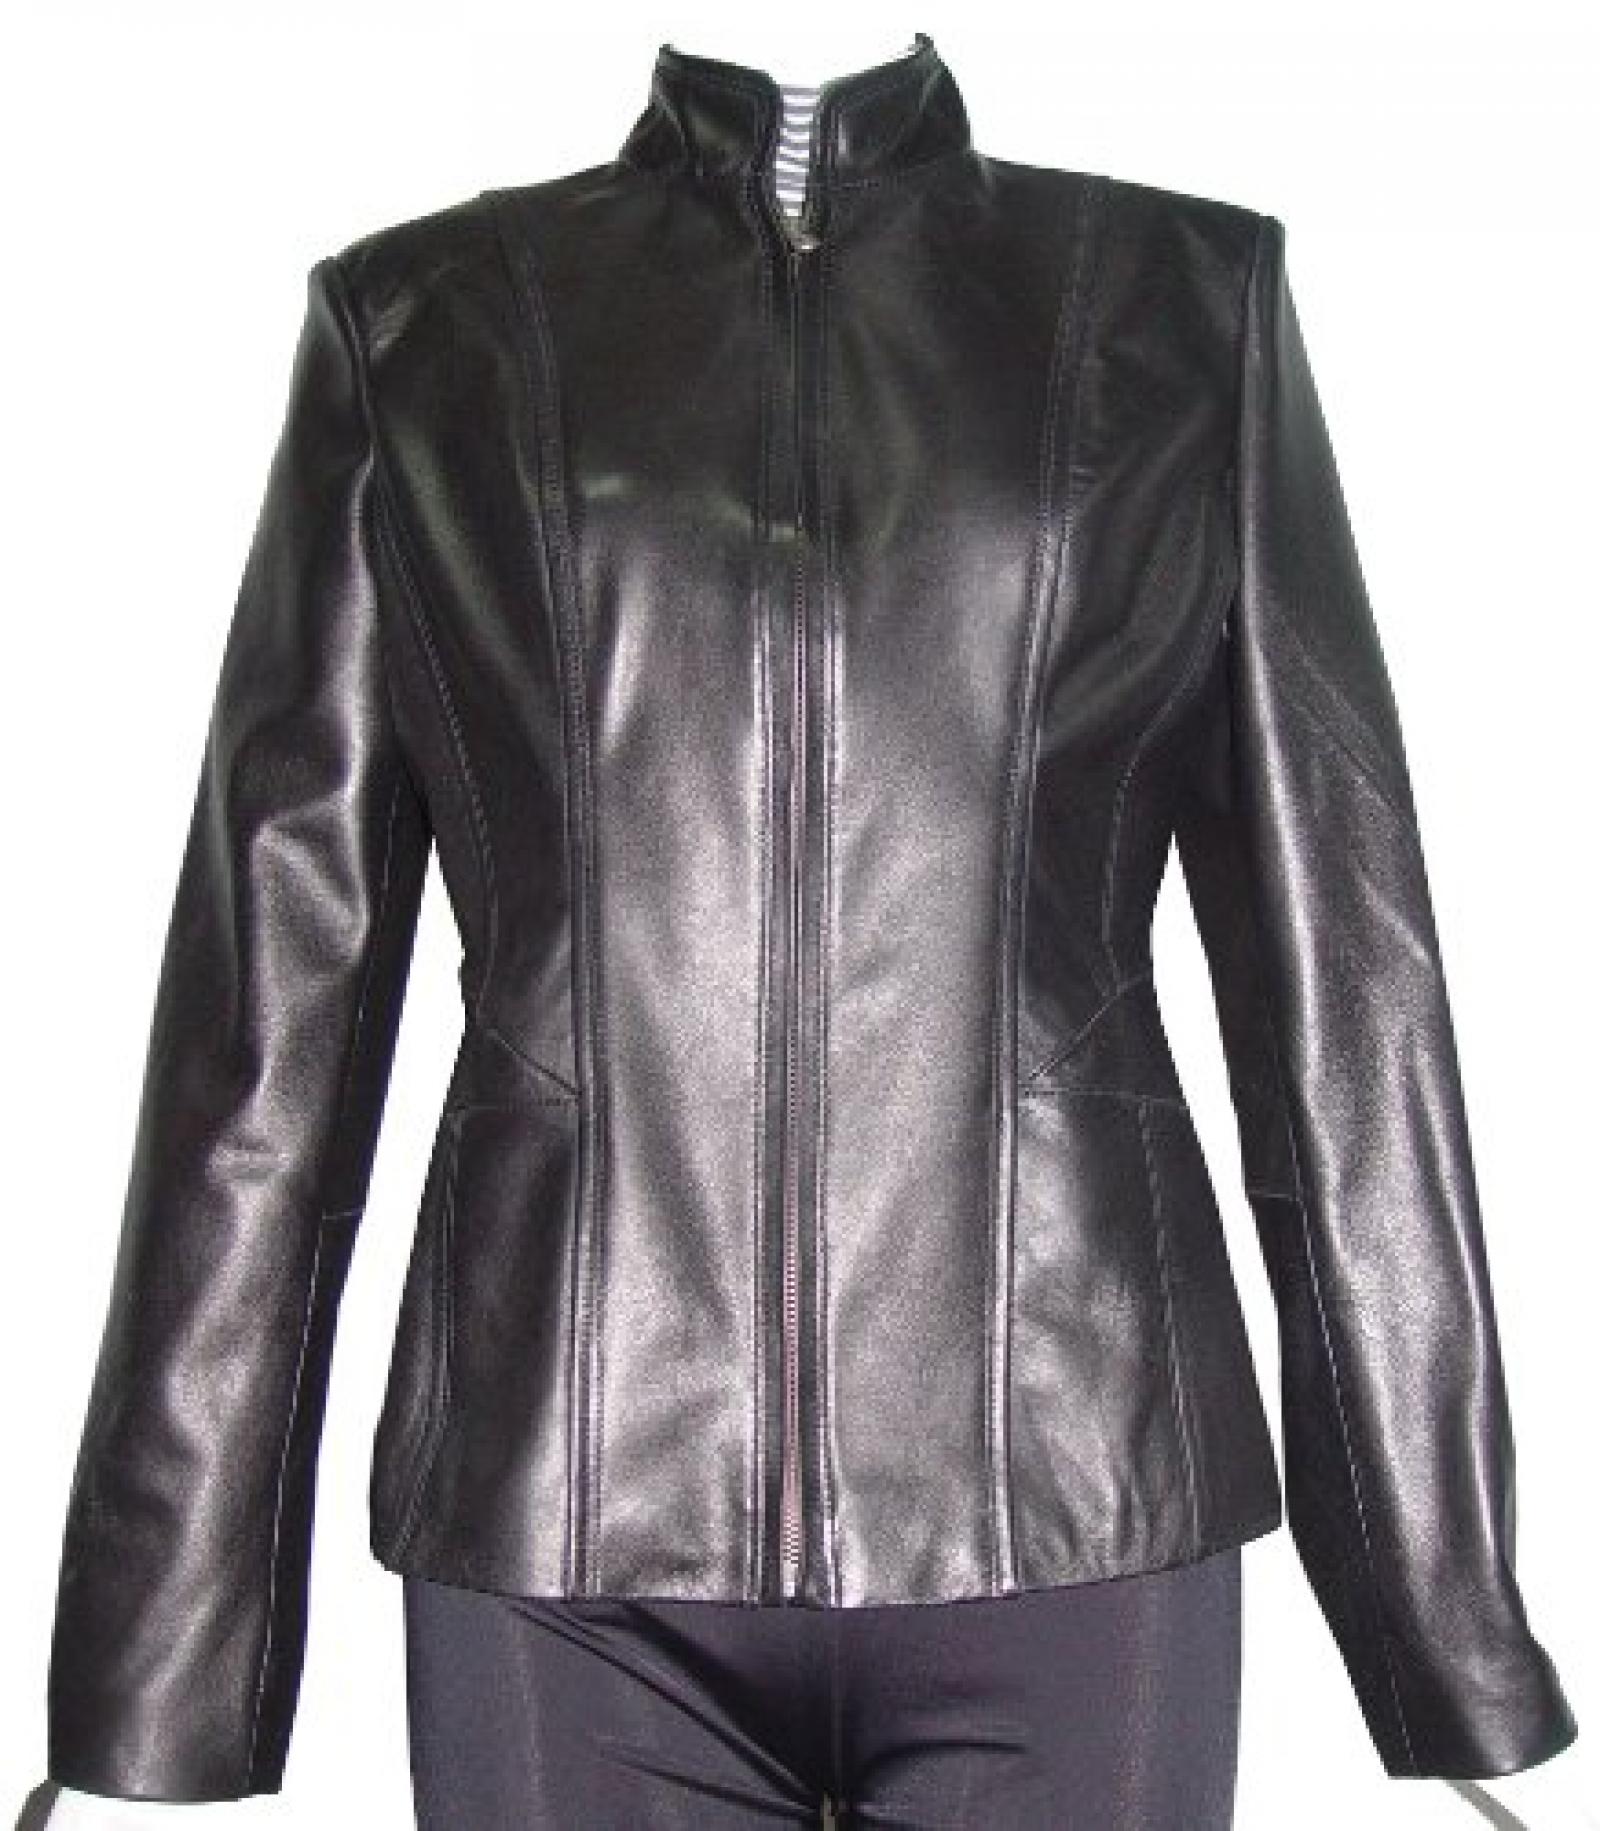 Nettailor Women PETITE SZ 4187 Soft Genuine Leather Simple Easy Biker Jacket 